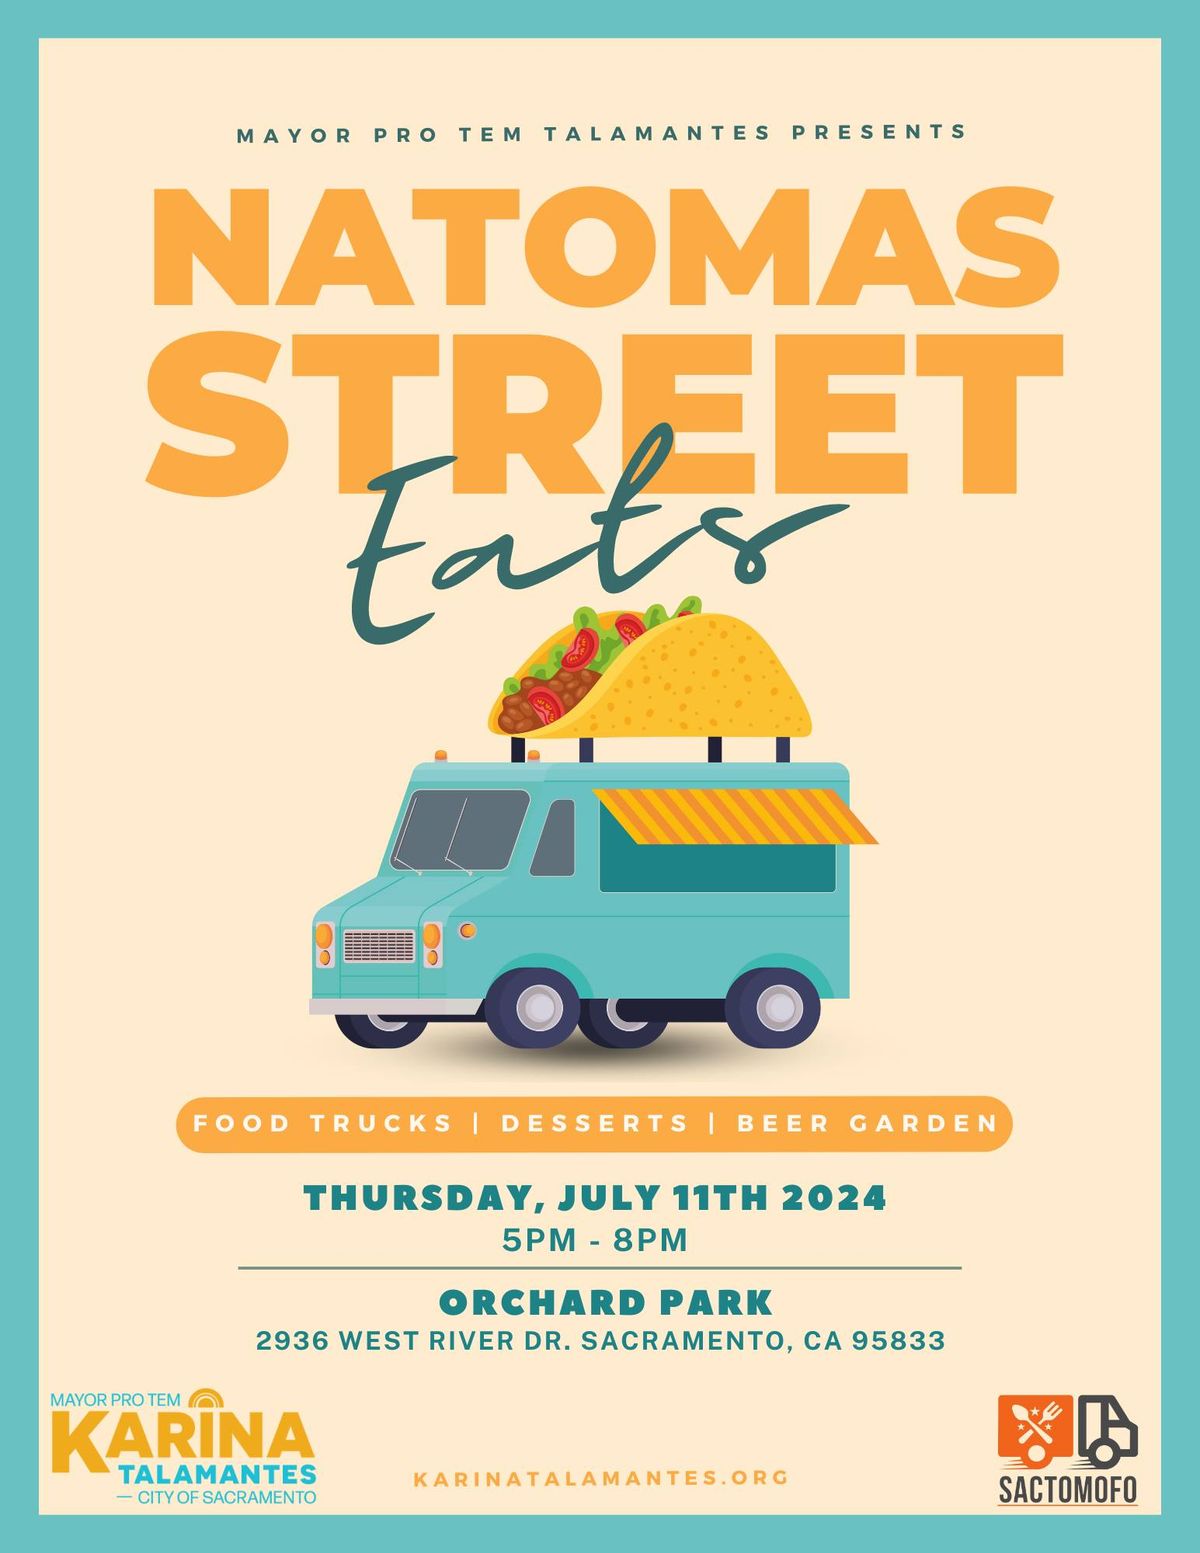 Natomas Street Eats